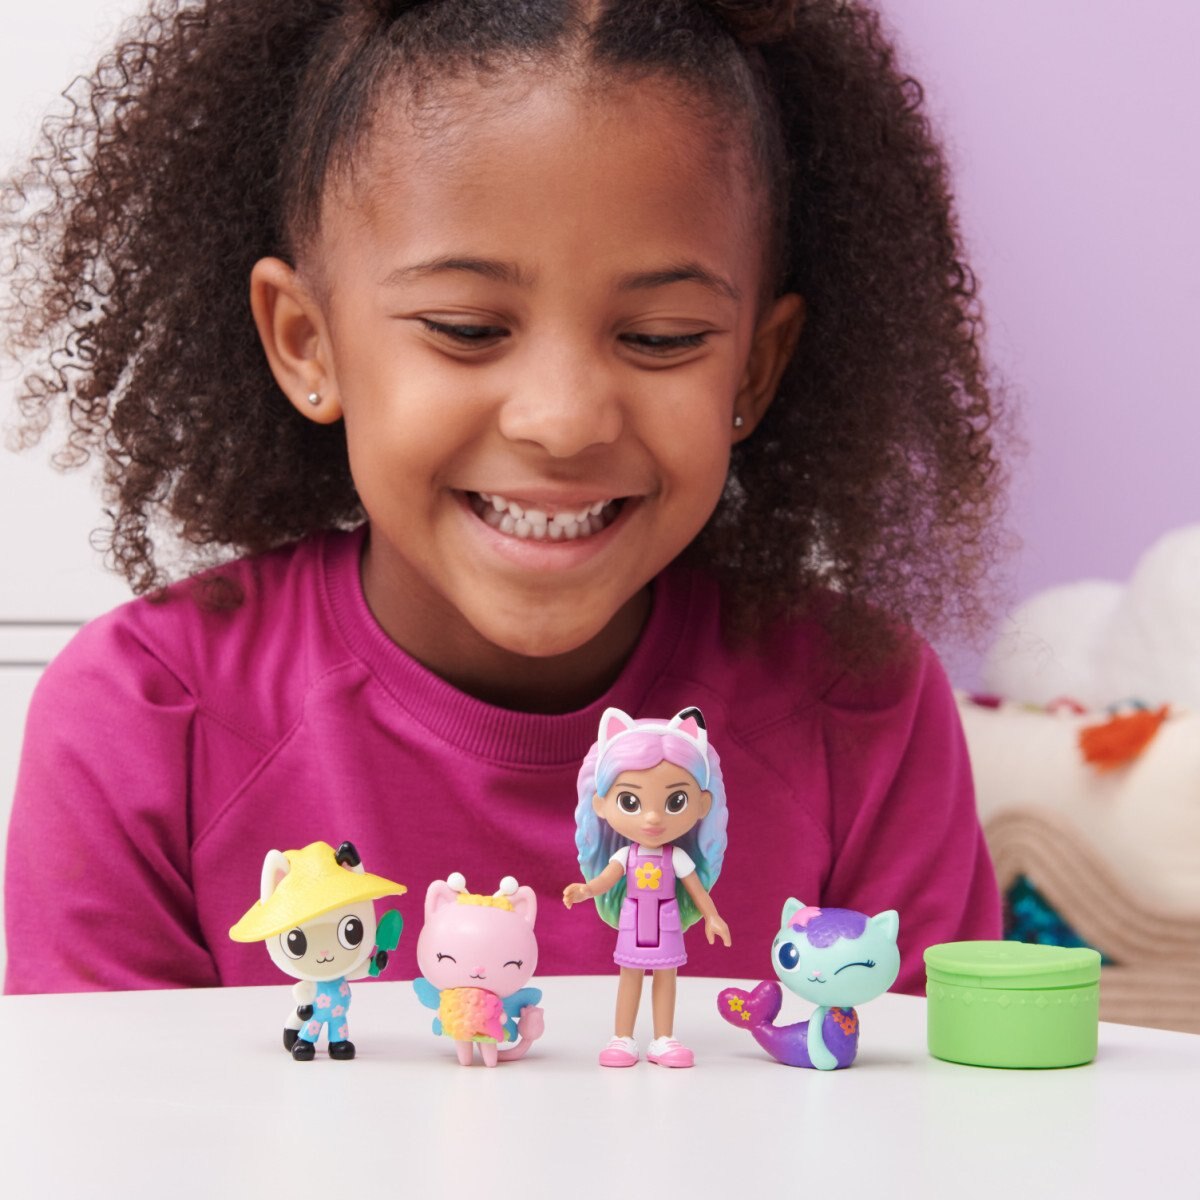 La casa de muñecas de Gabby Set de Figuras, Personaje + 3 Años